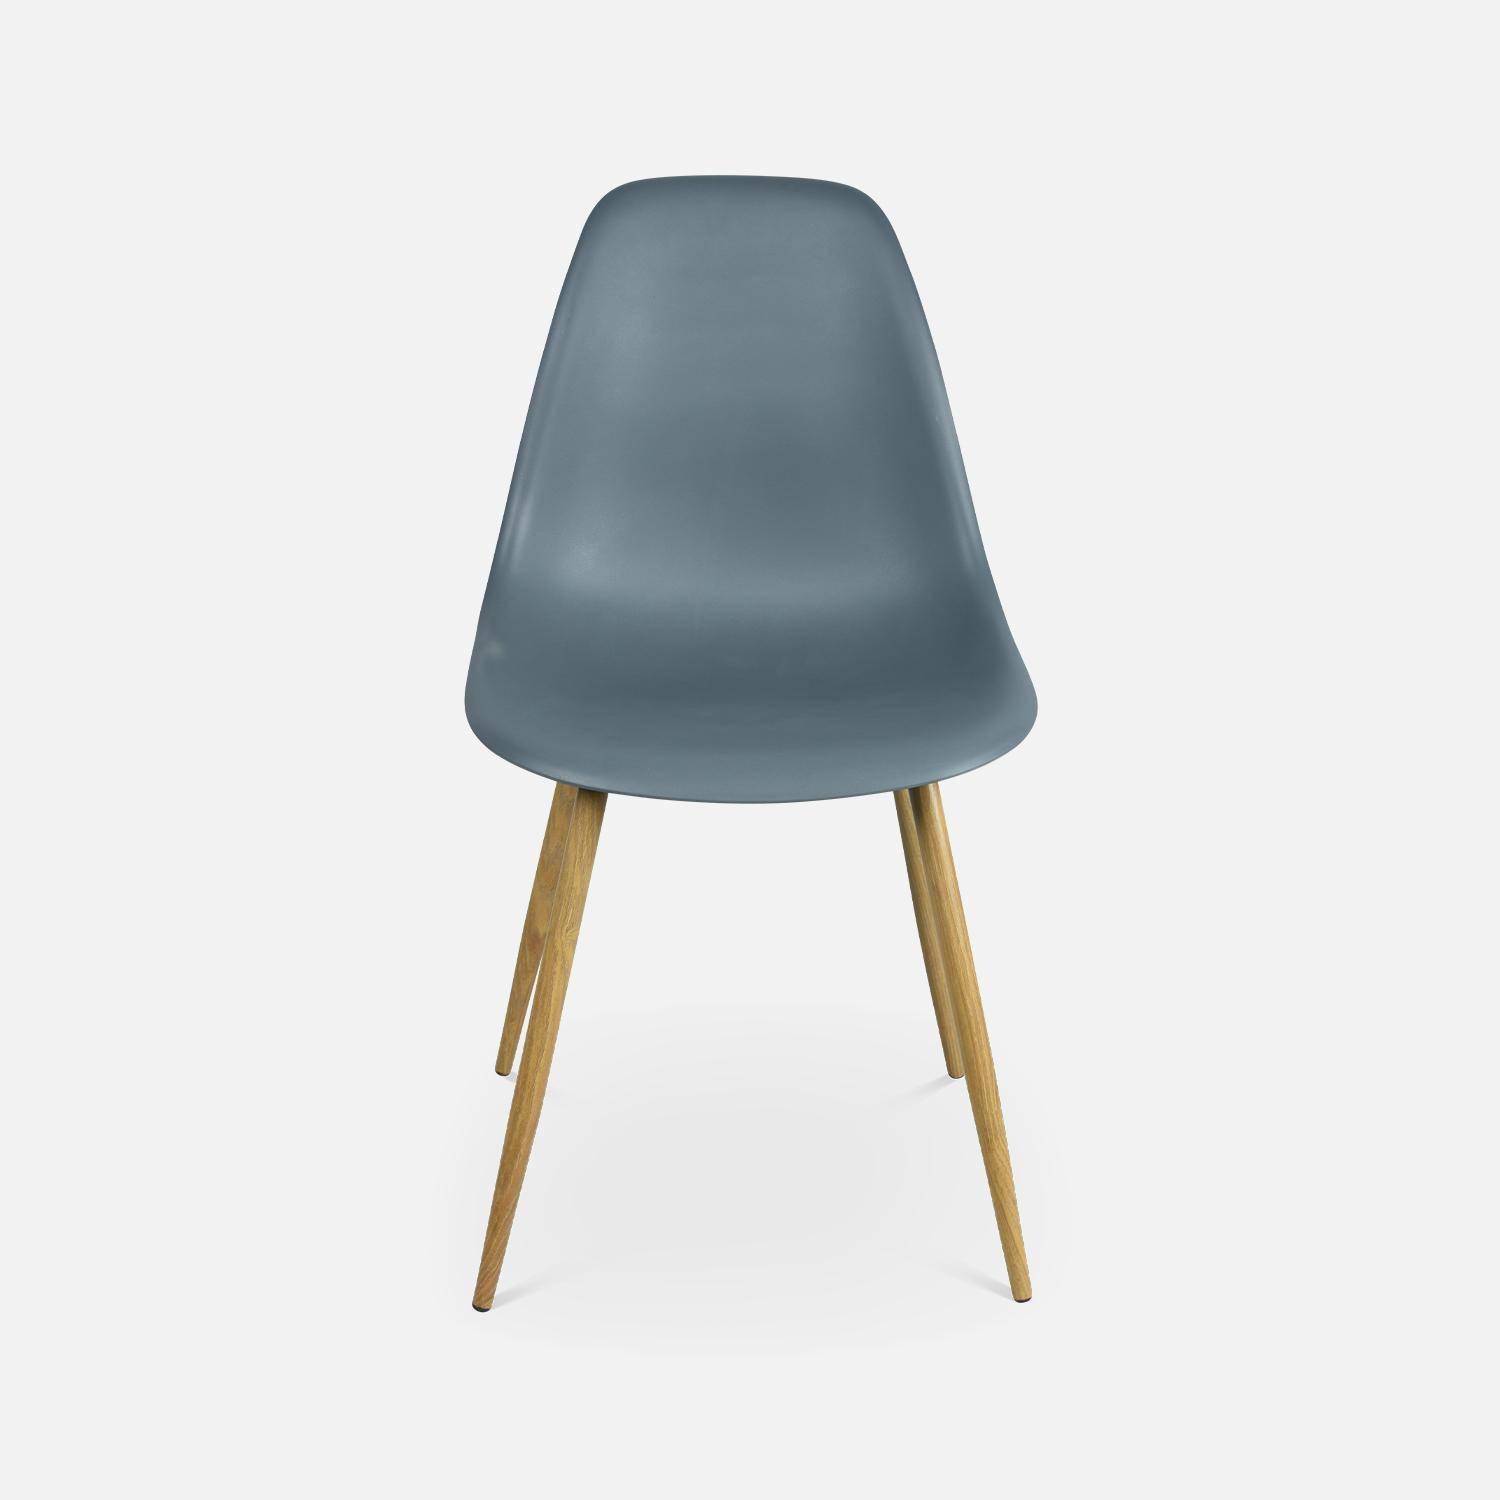 Juego de 4 sillas escandinavas - Lars - patas de metal color madera, sillas de una plaza, color gris Photo6